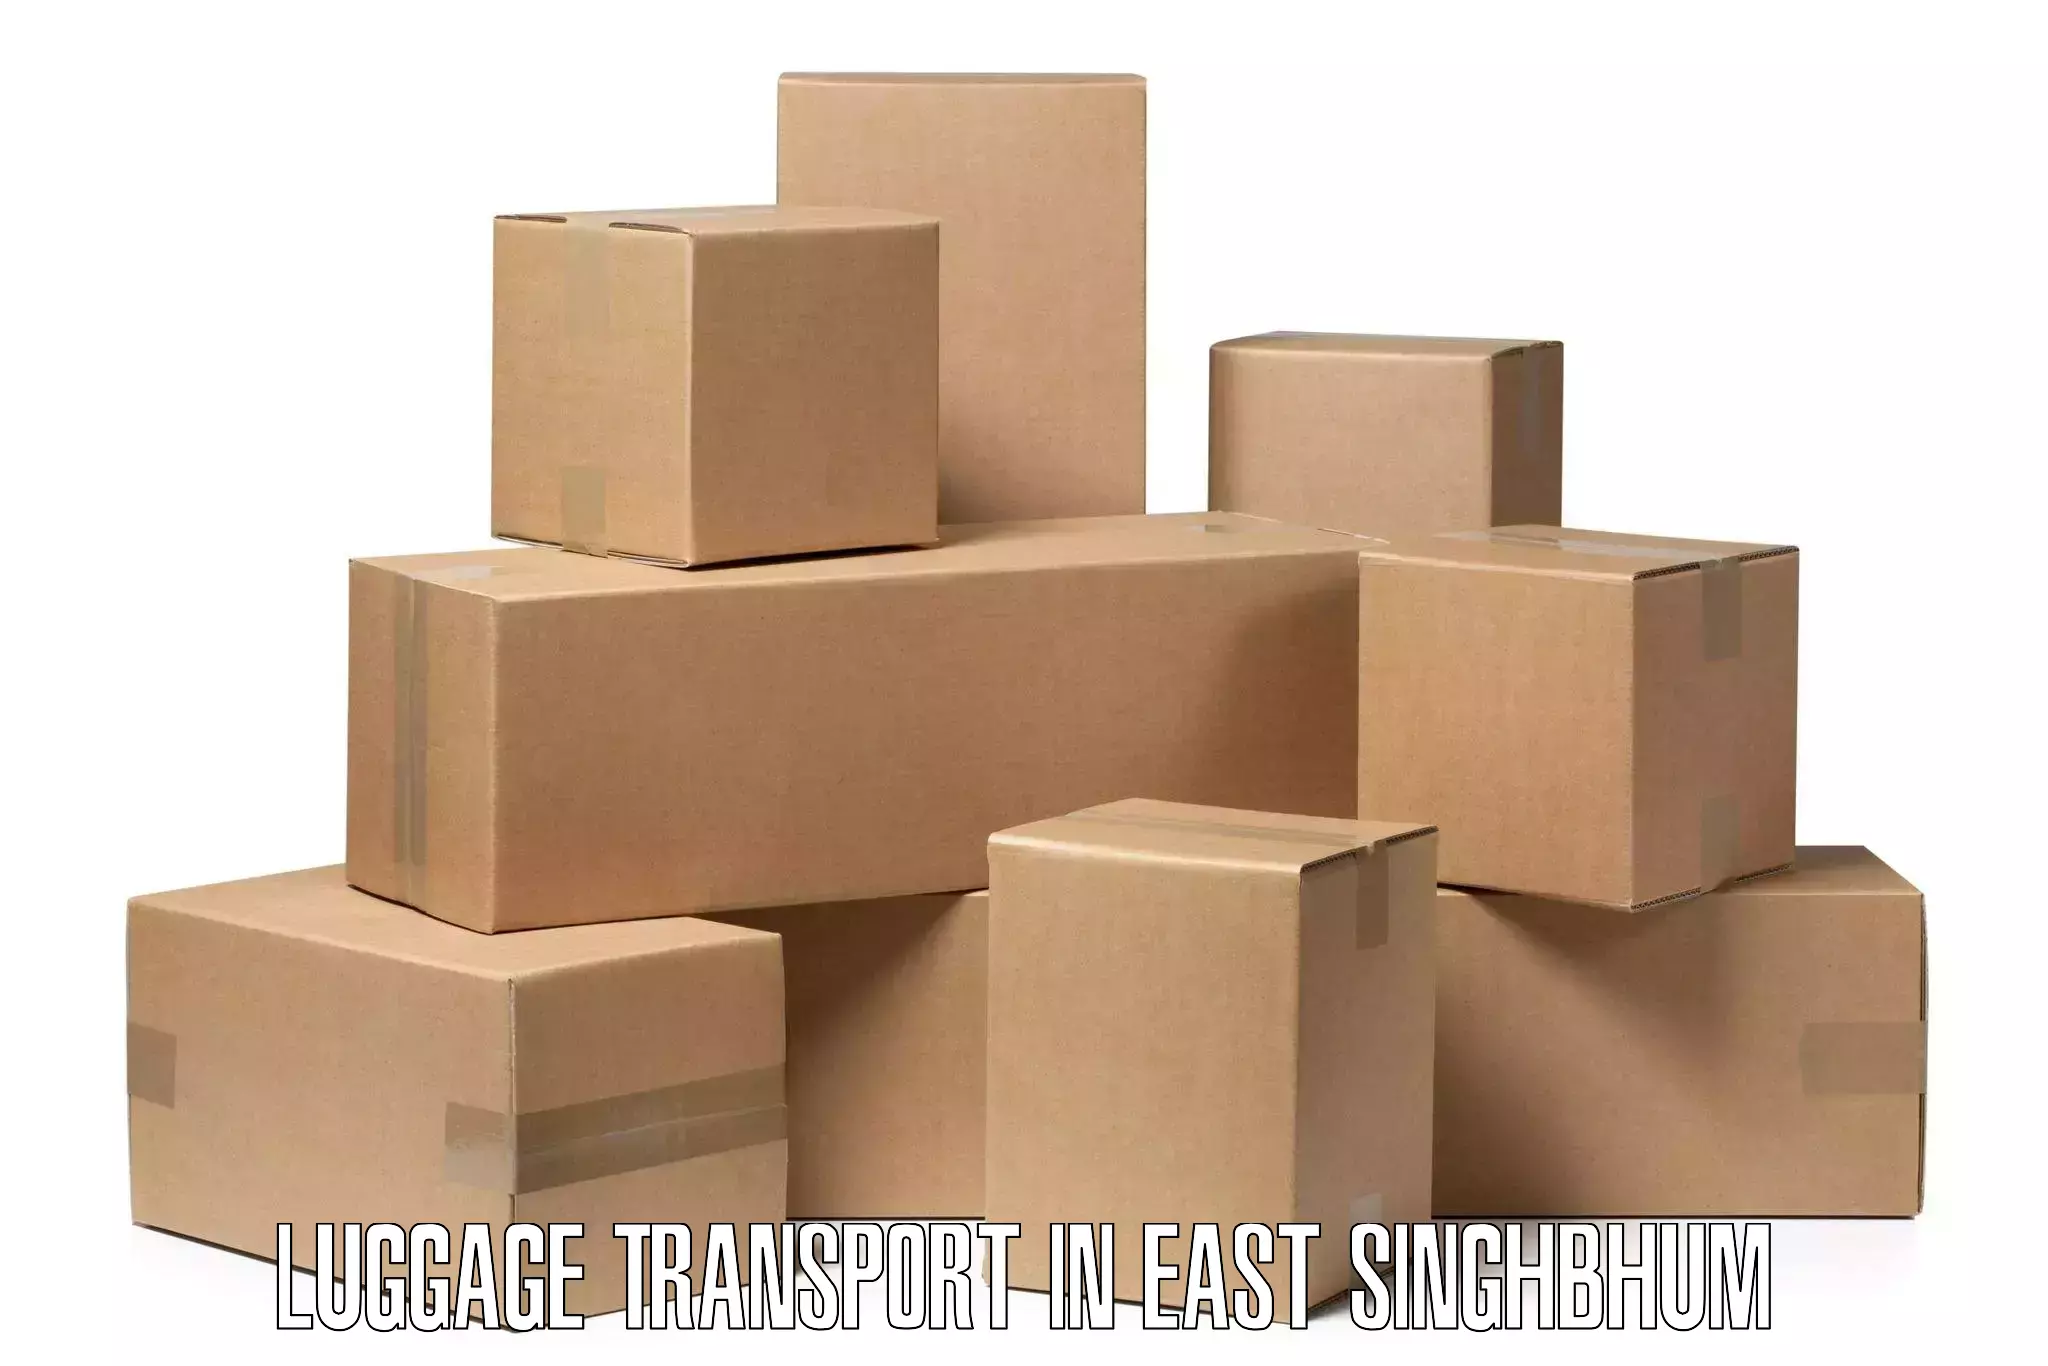 Luggage transport schedule in East Singhbhum